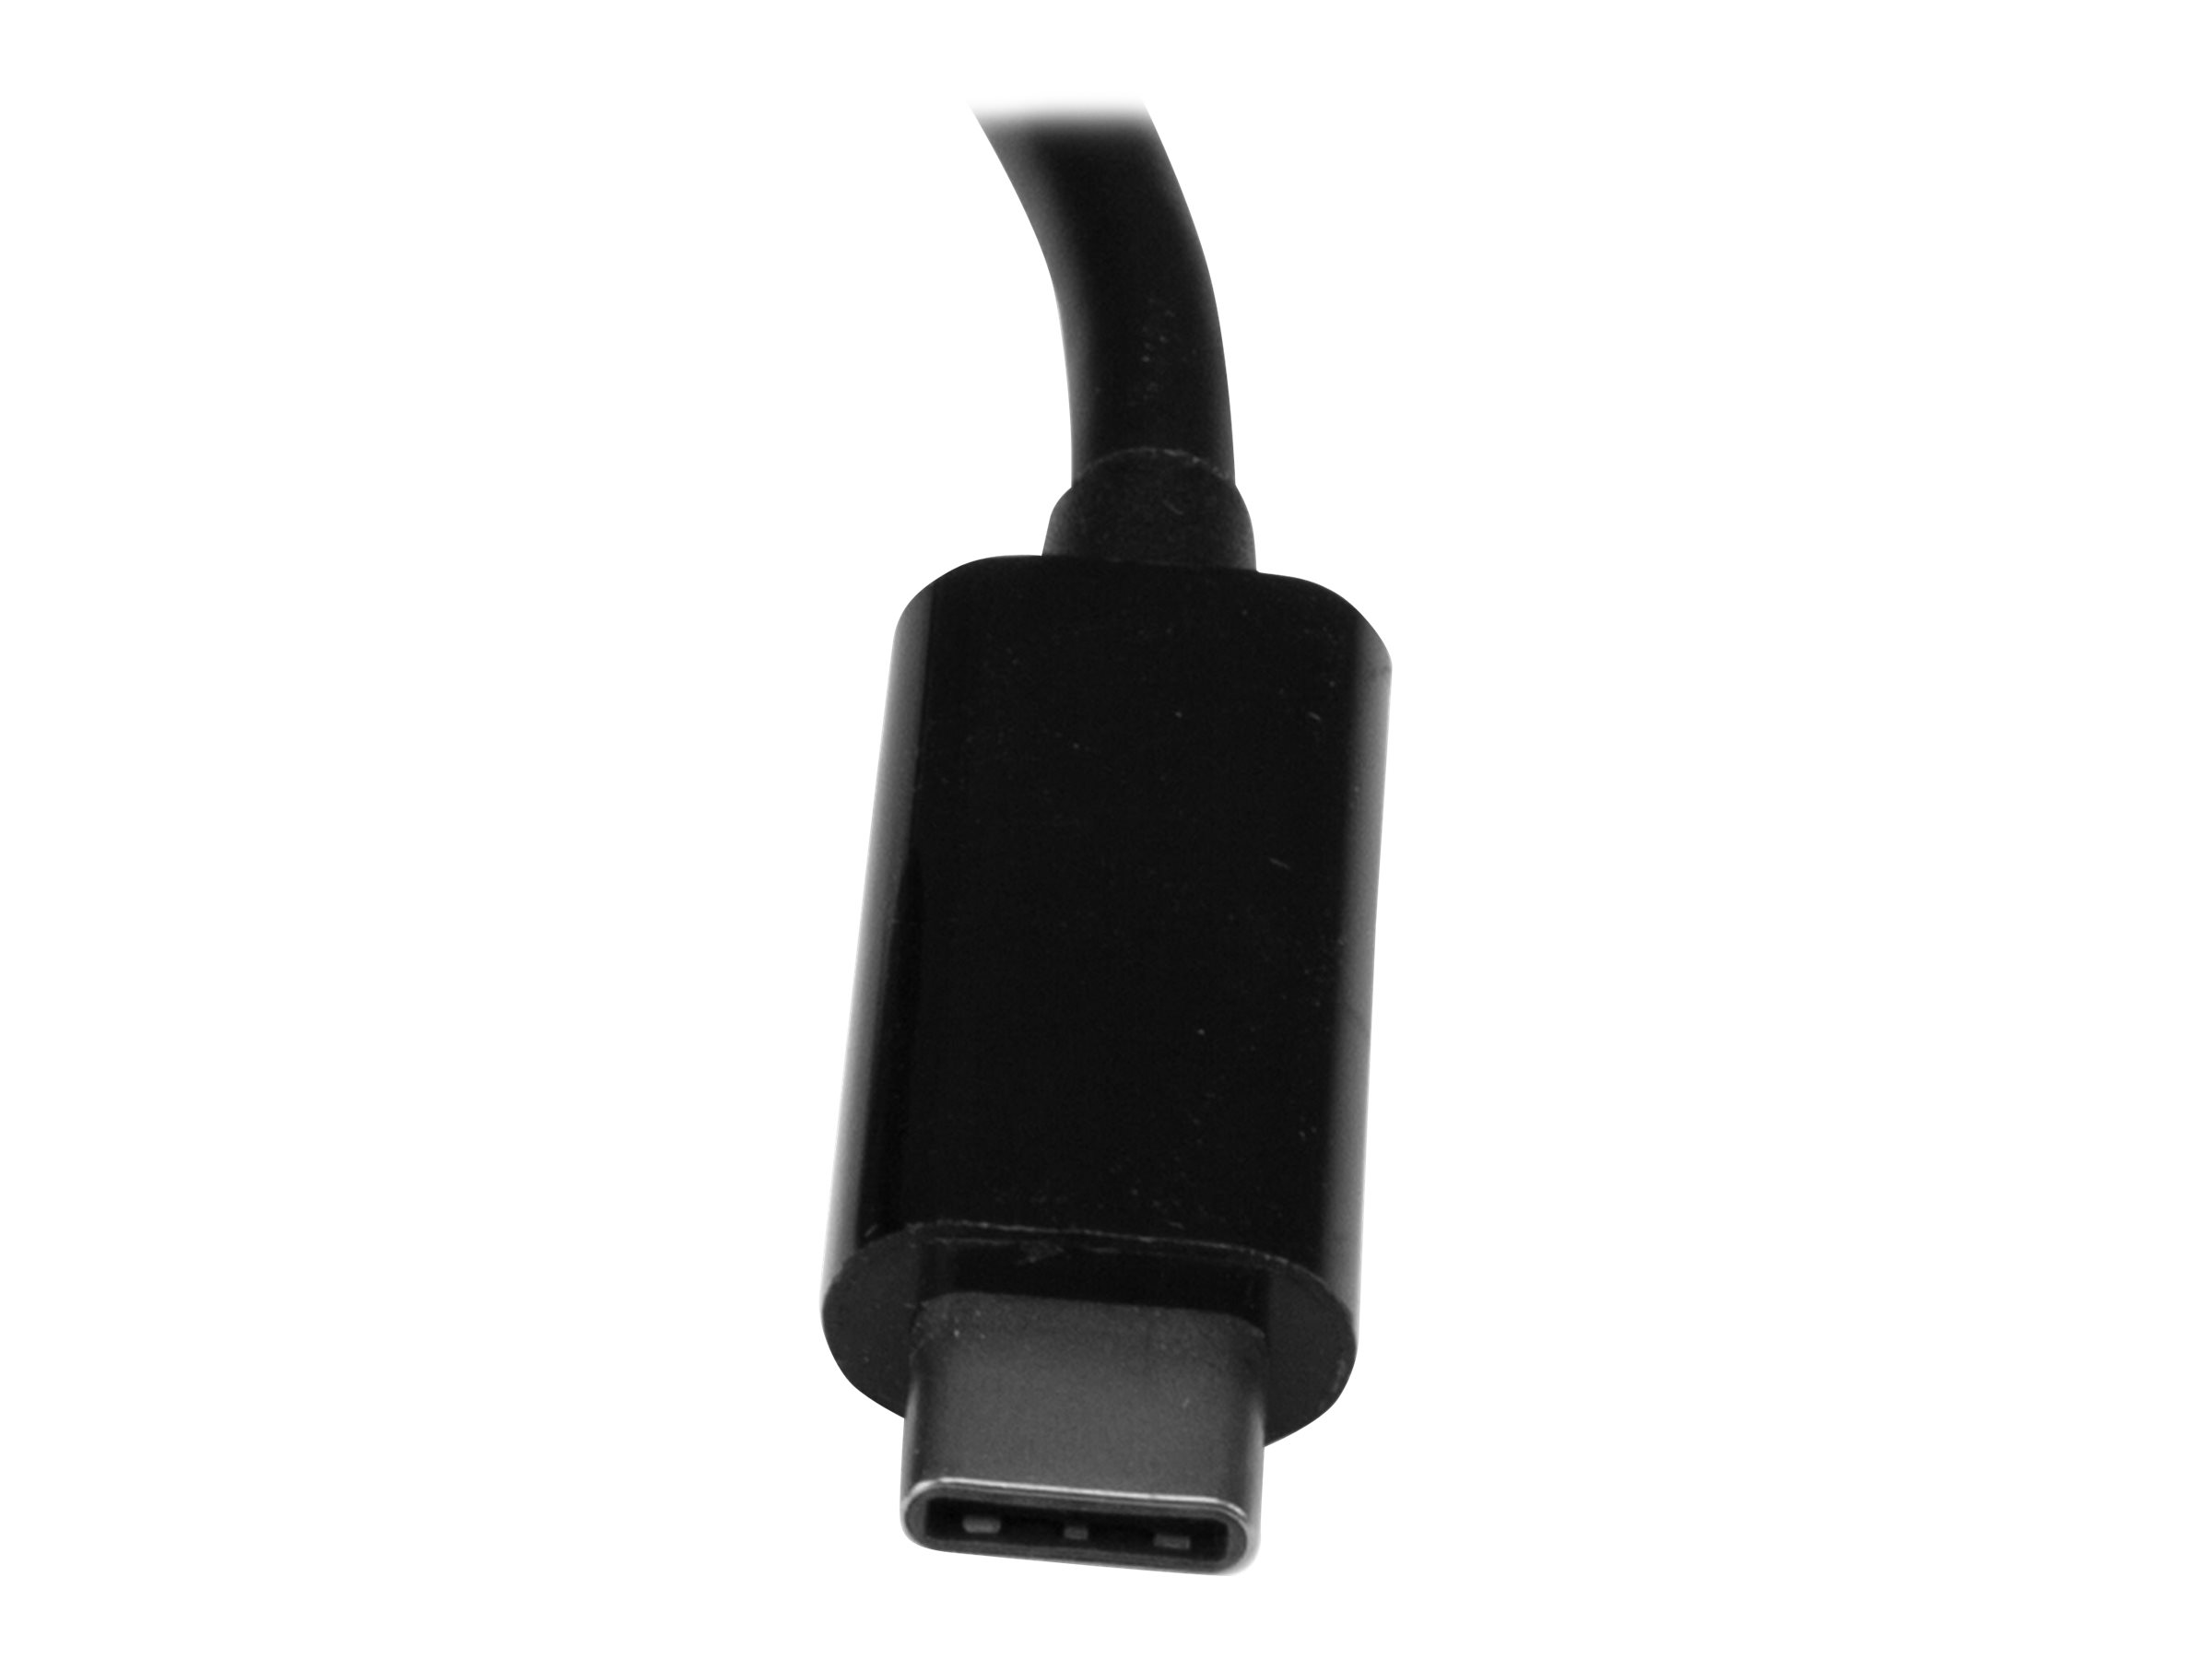 StarTech.com 3 Port USB 3.0 Hub mit Gigabit Ethernet und Stromversorgung